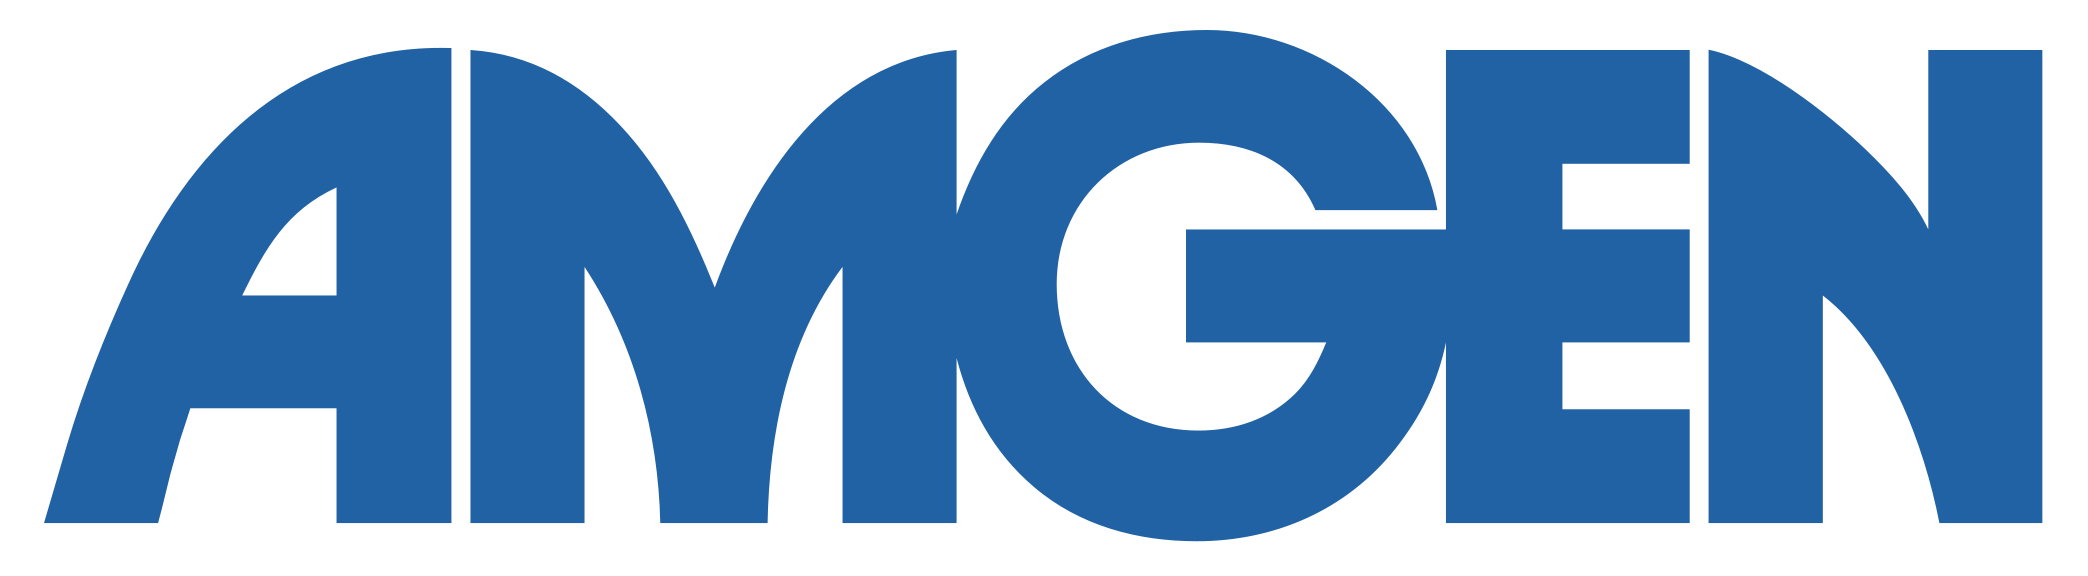 Amgen Logo - Amgen-Logo-PNG-Transparent | Renal Support Network